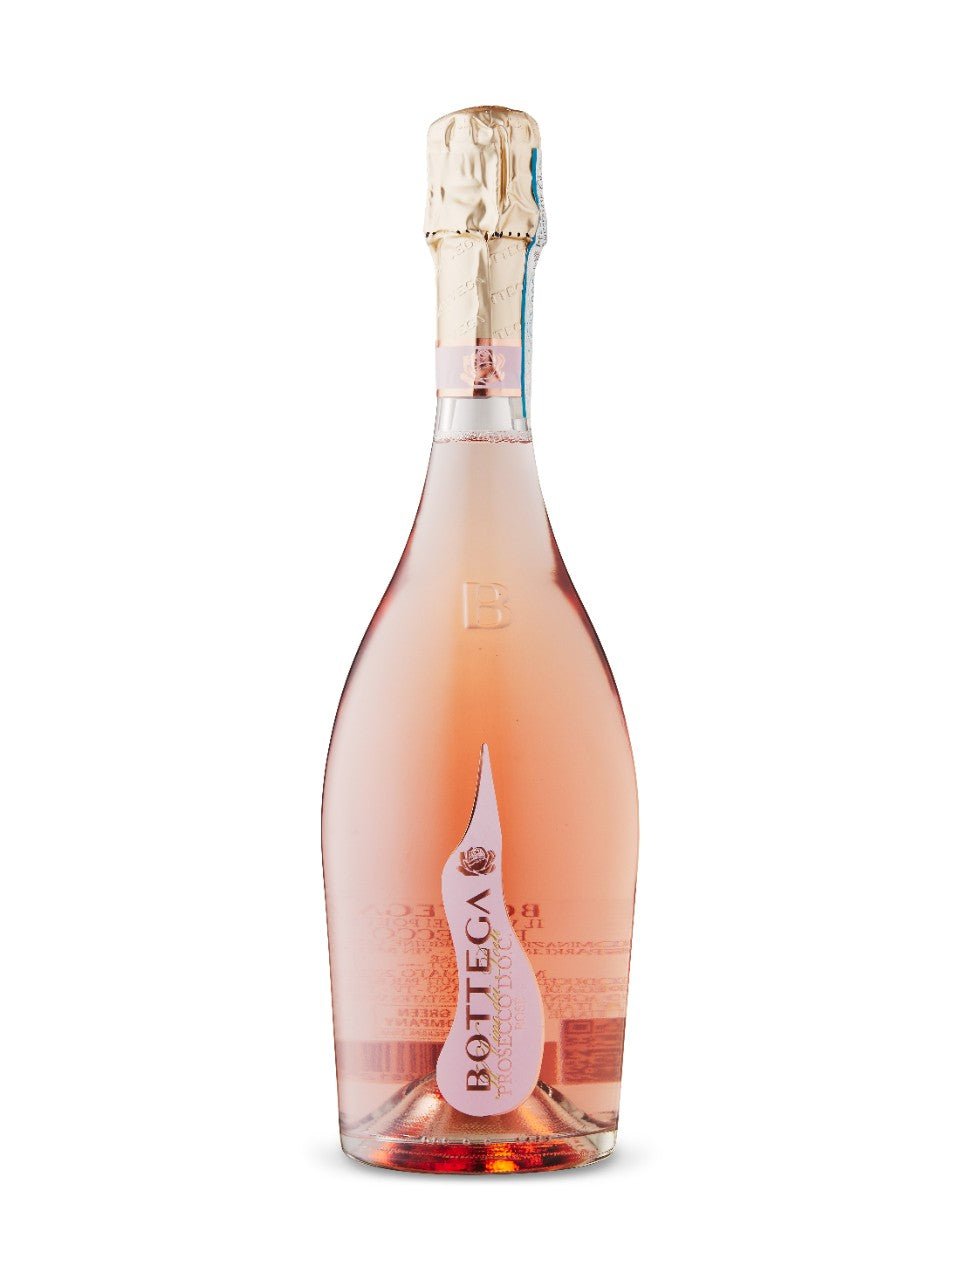 Bottega Prosecco Rose DOC Spumante Brut, Veneto | Exquisite Wine & Alcohol Gift Delivery Toronto Canada | Vyno